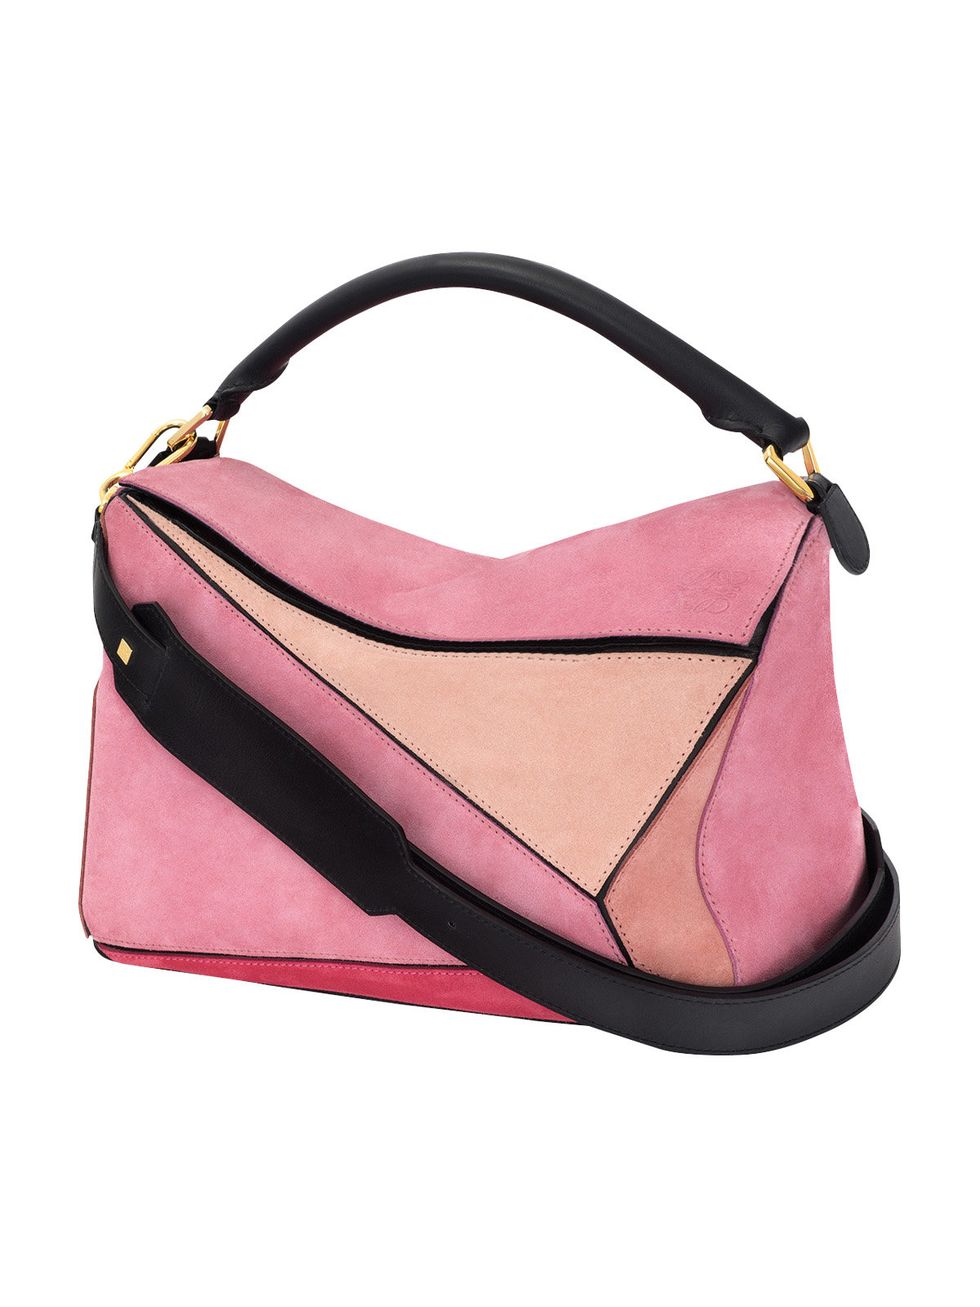 Product, Style, Pink, Fashion, Bag, Black, Beige, Shoulder bag, Leather, Maroon, 